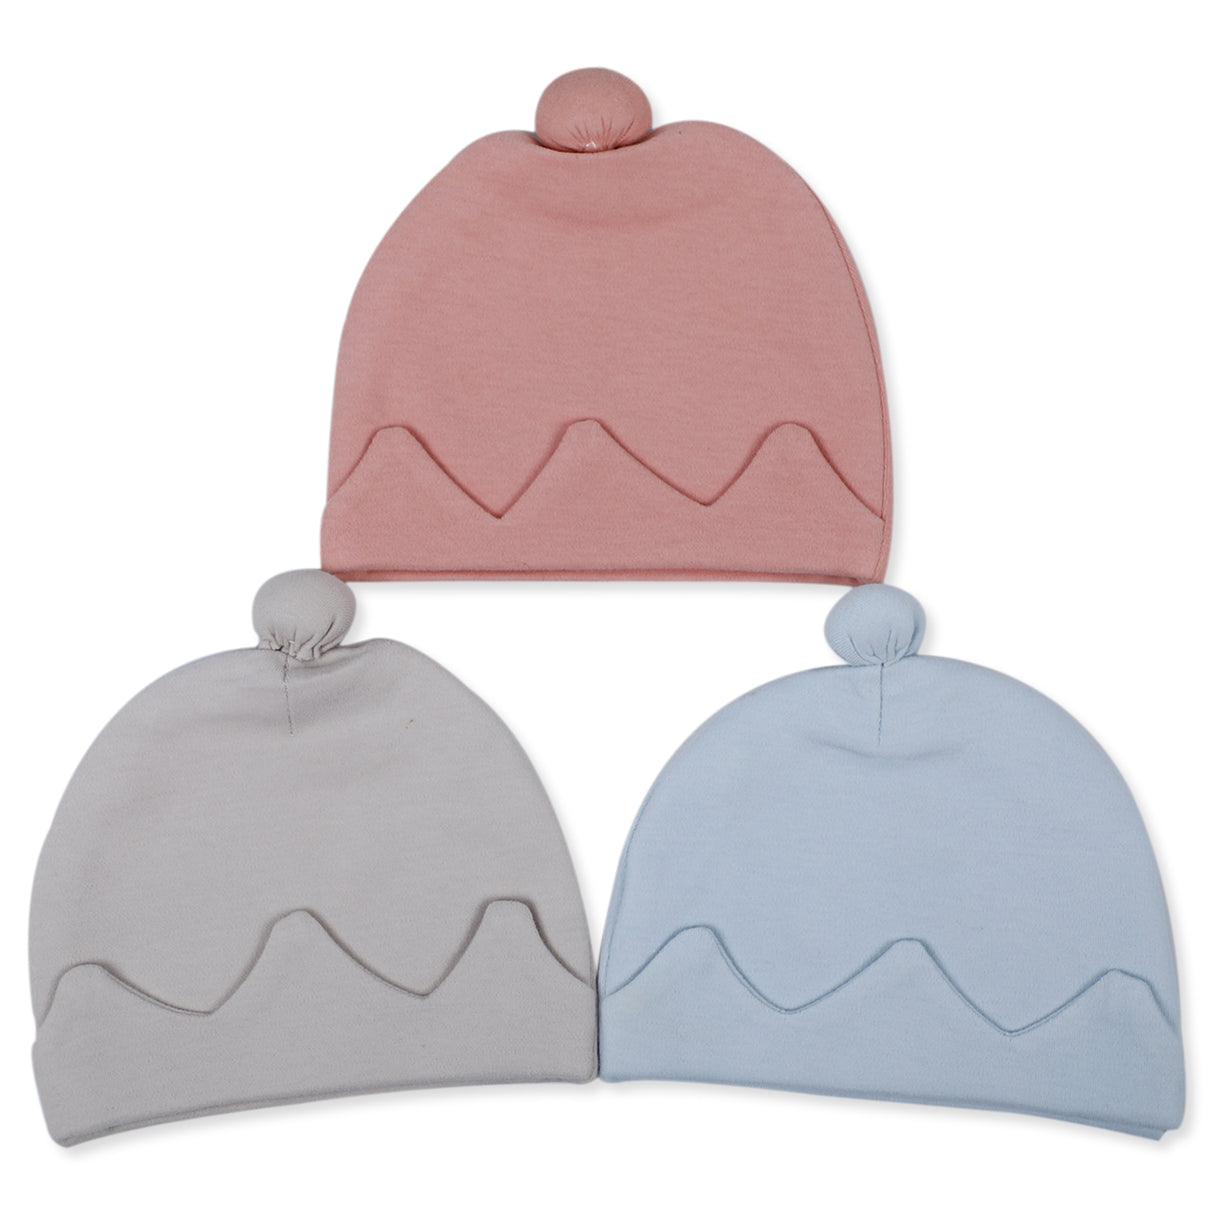 Soft Adorable Cotton Caps